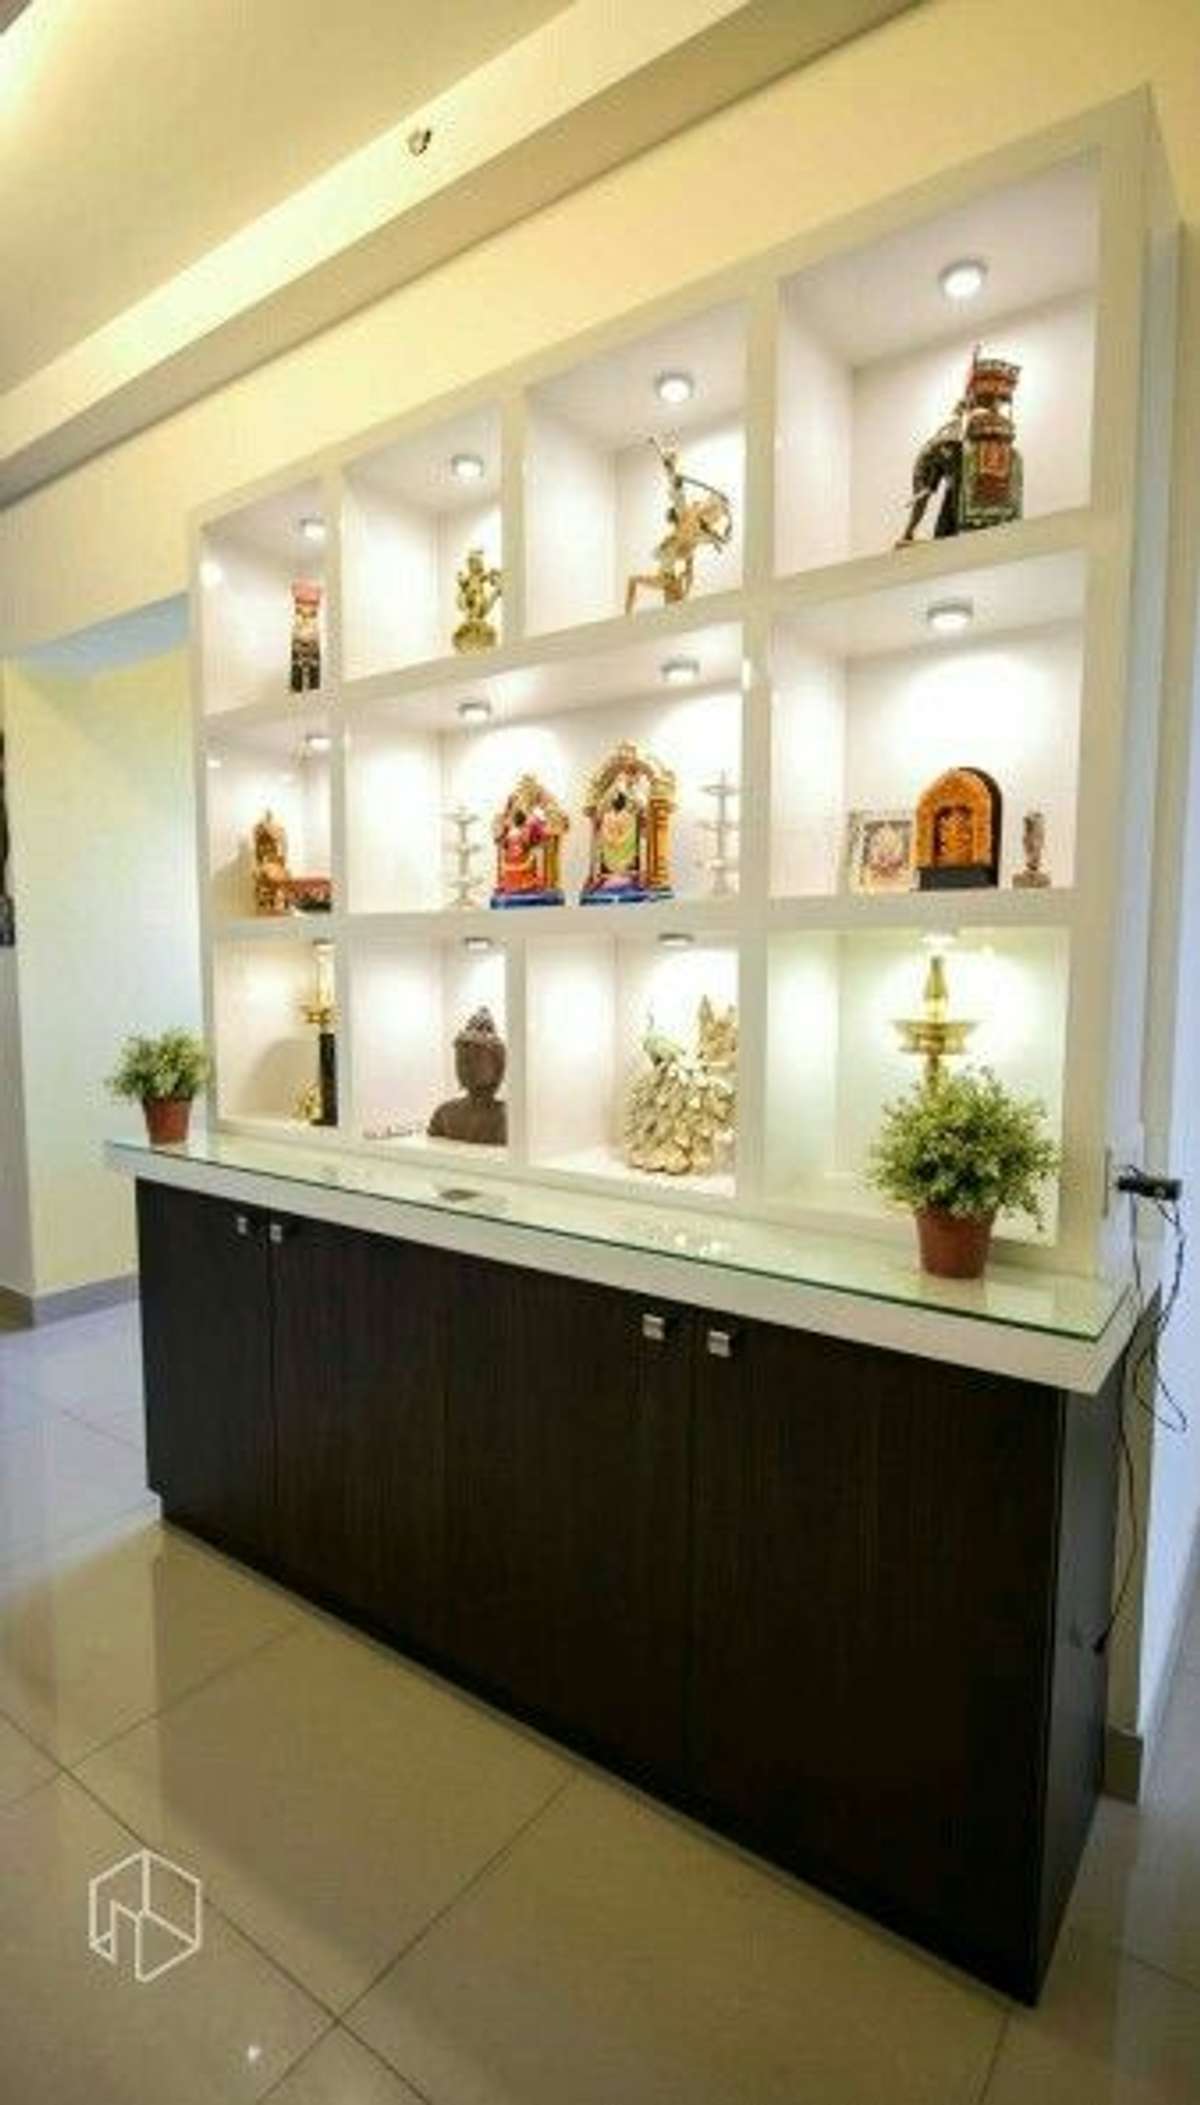 Storage, Prayer Room Designs by Contractor Culture Interior, Delhi | Kolo